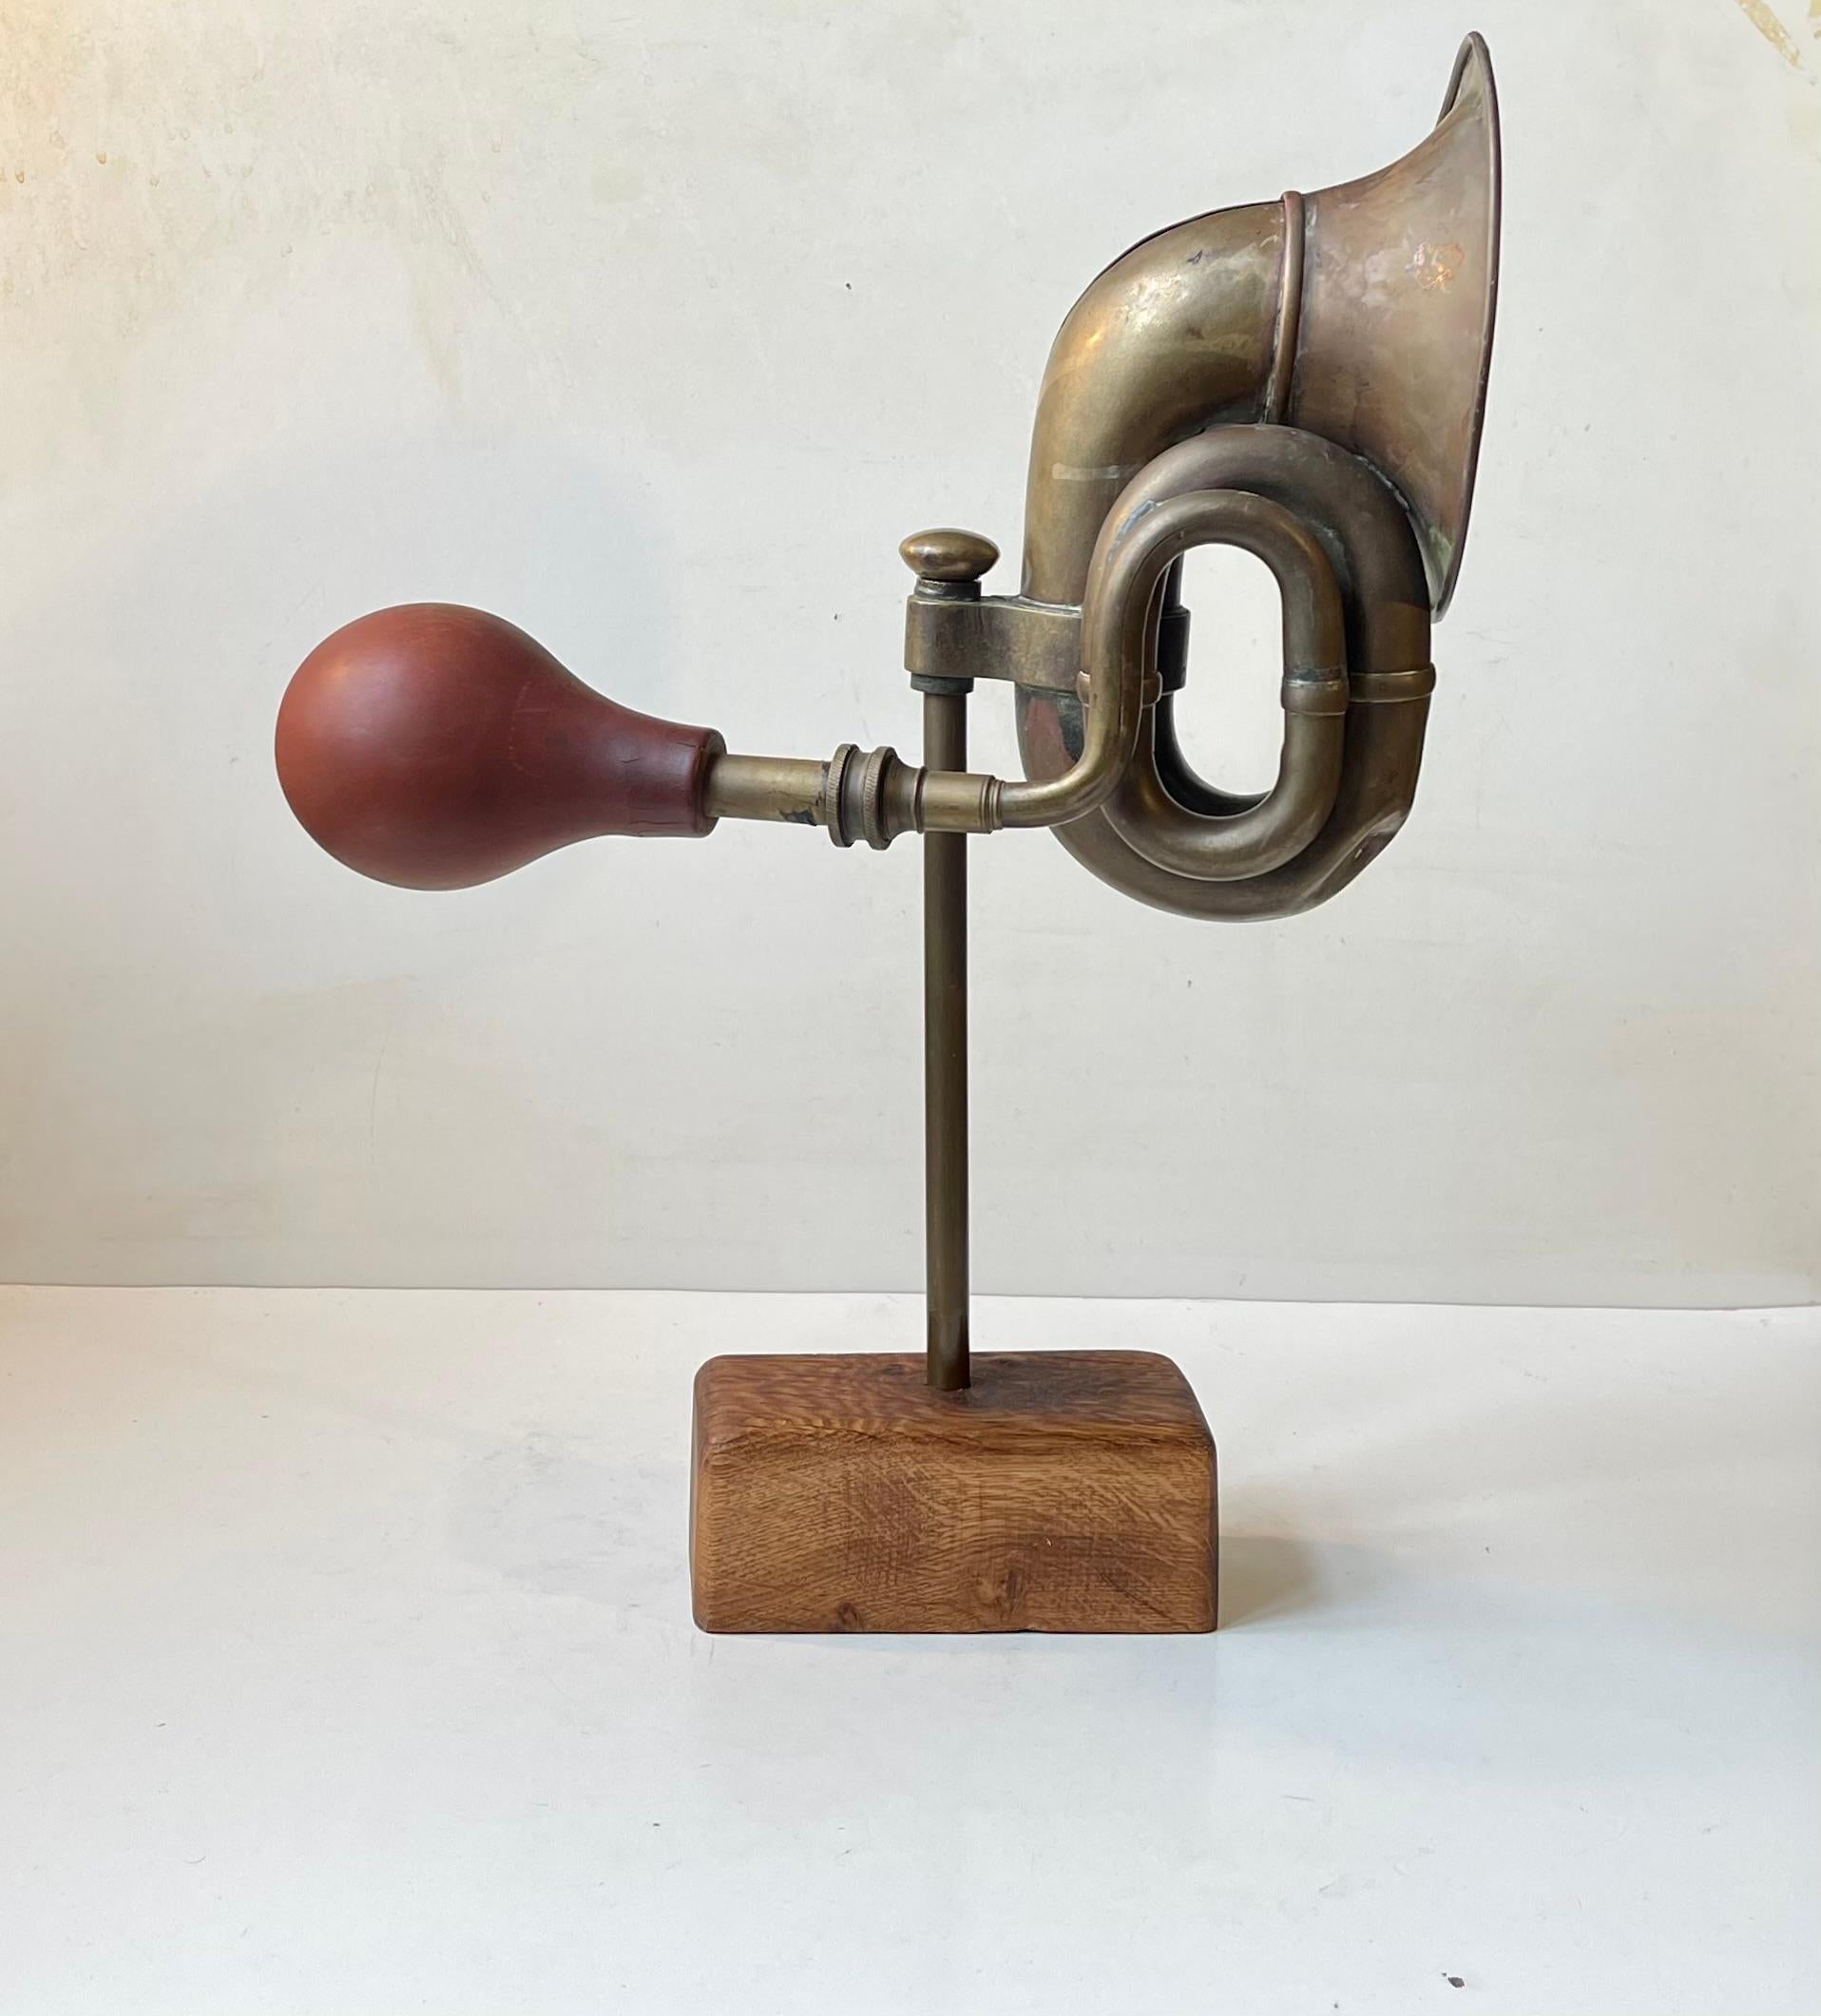 Insolite objet monté en forme de corne de véhicule en laiton des années 1920, monté sur une tige en laiton et une base rectangulaire en chêne patiné. Sculpteur/artiste danois inconnu, vers 1970-80. Il y a encore un peu de bruit dans la Horn lorsque